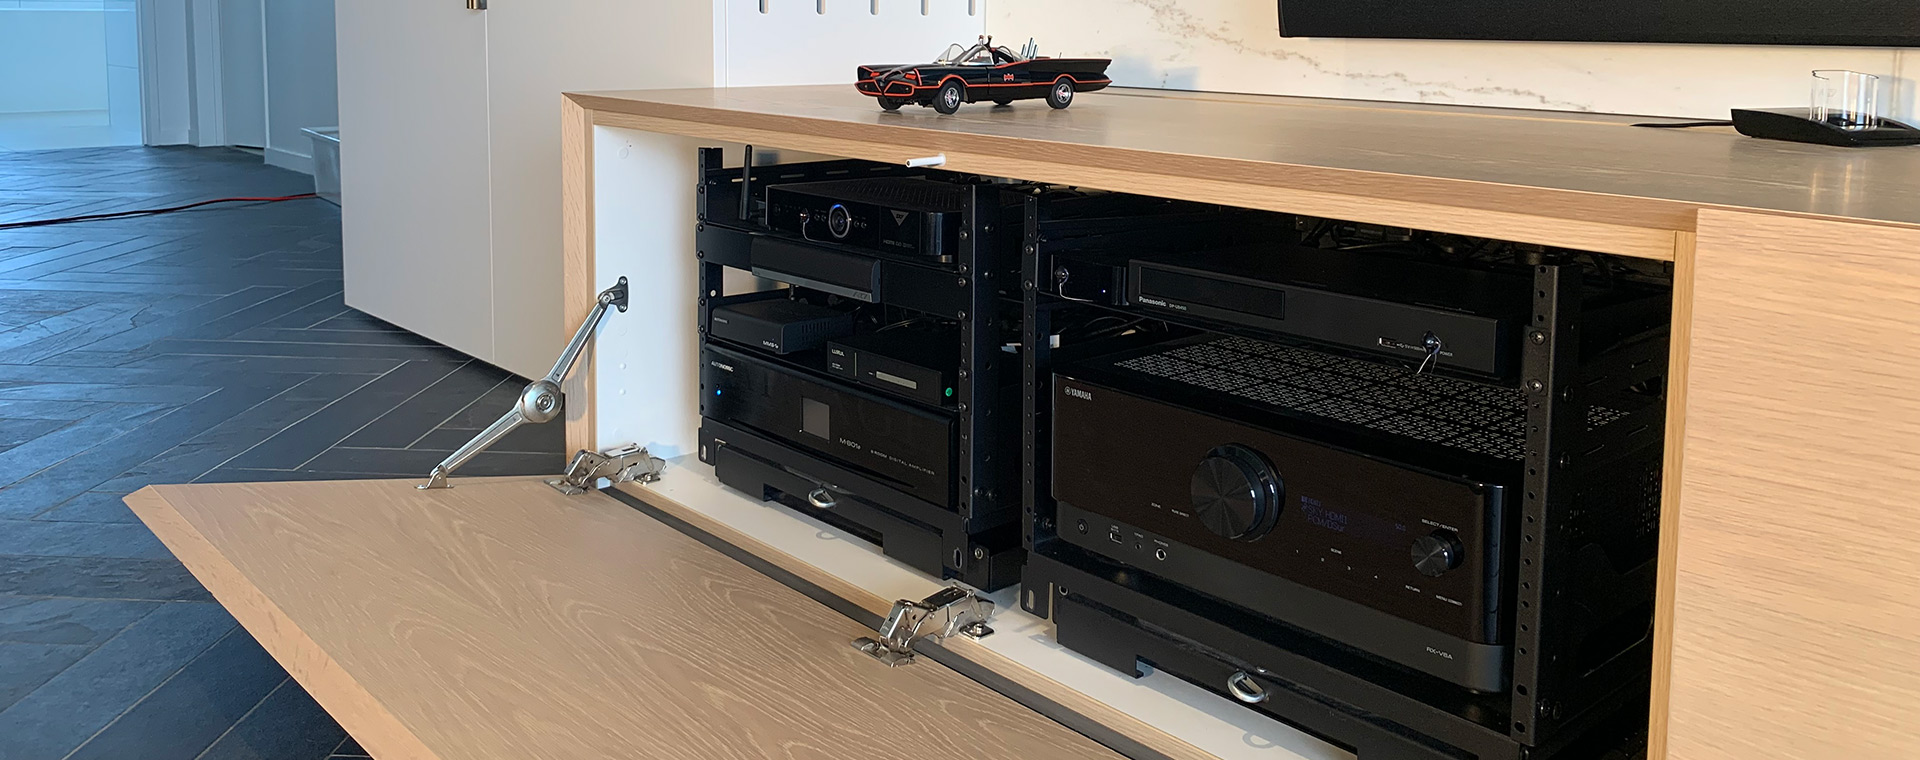 Custom built cabinetry housing entertainment source equipment in AV racks